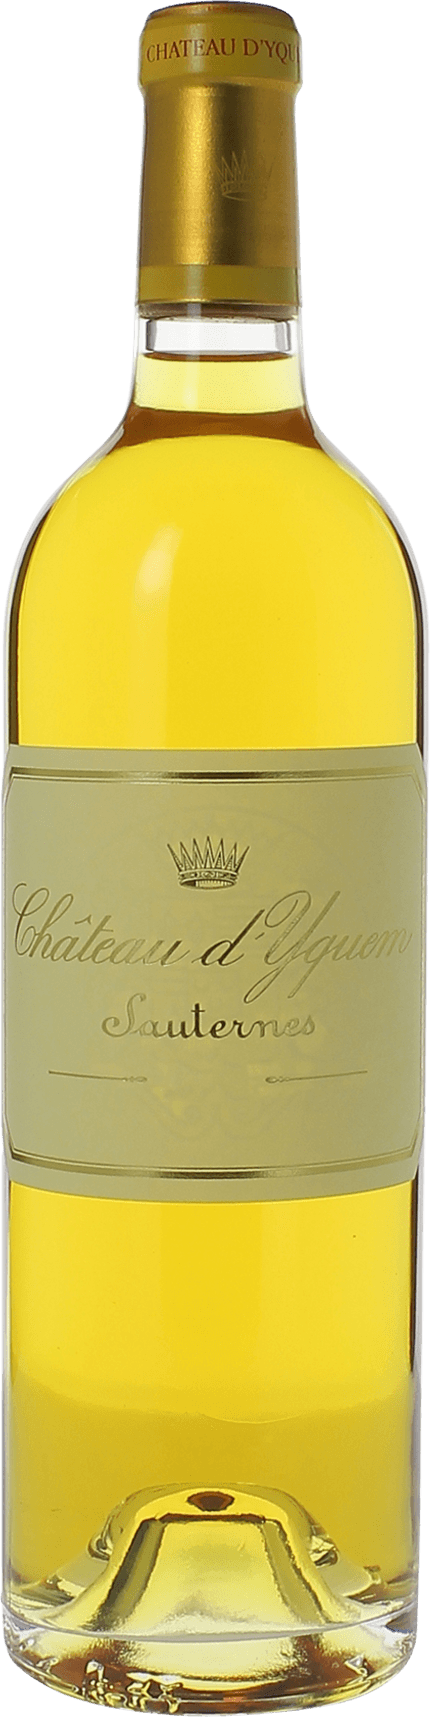 Yquem (disponible dbut avril) 1937 1er Grand cru class Sauternes, Bordeaux blanc